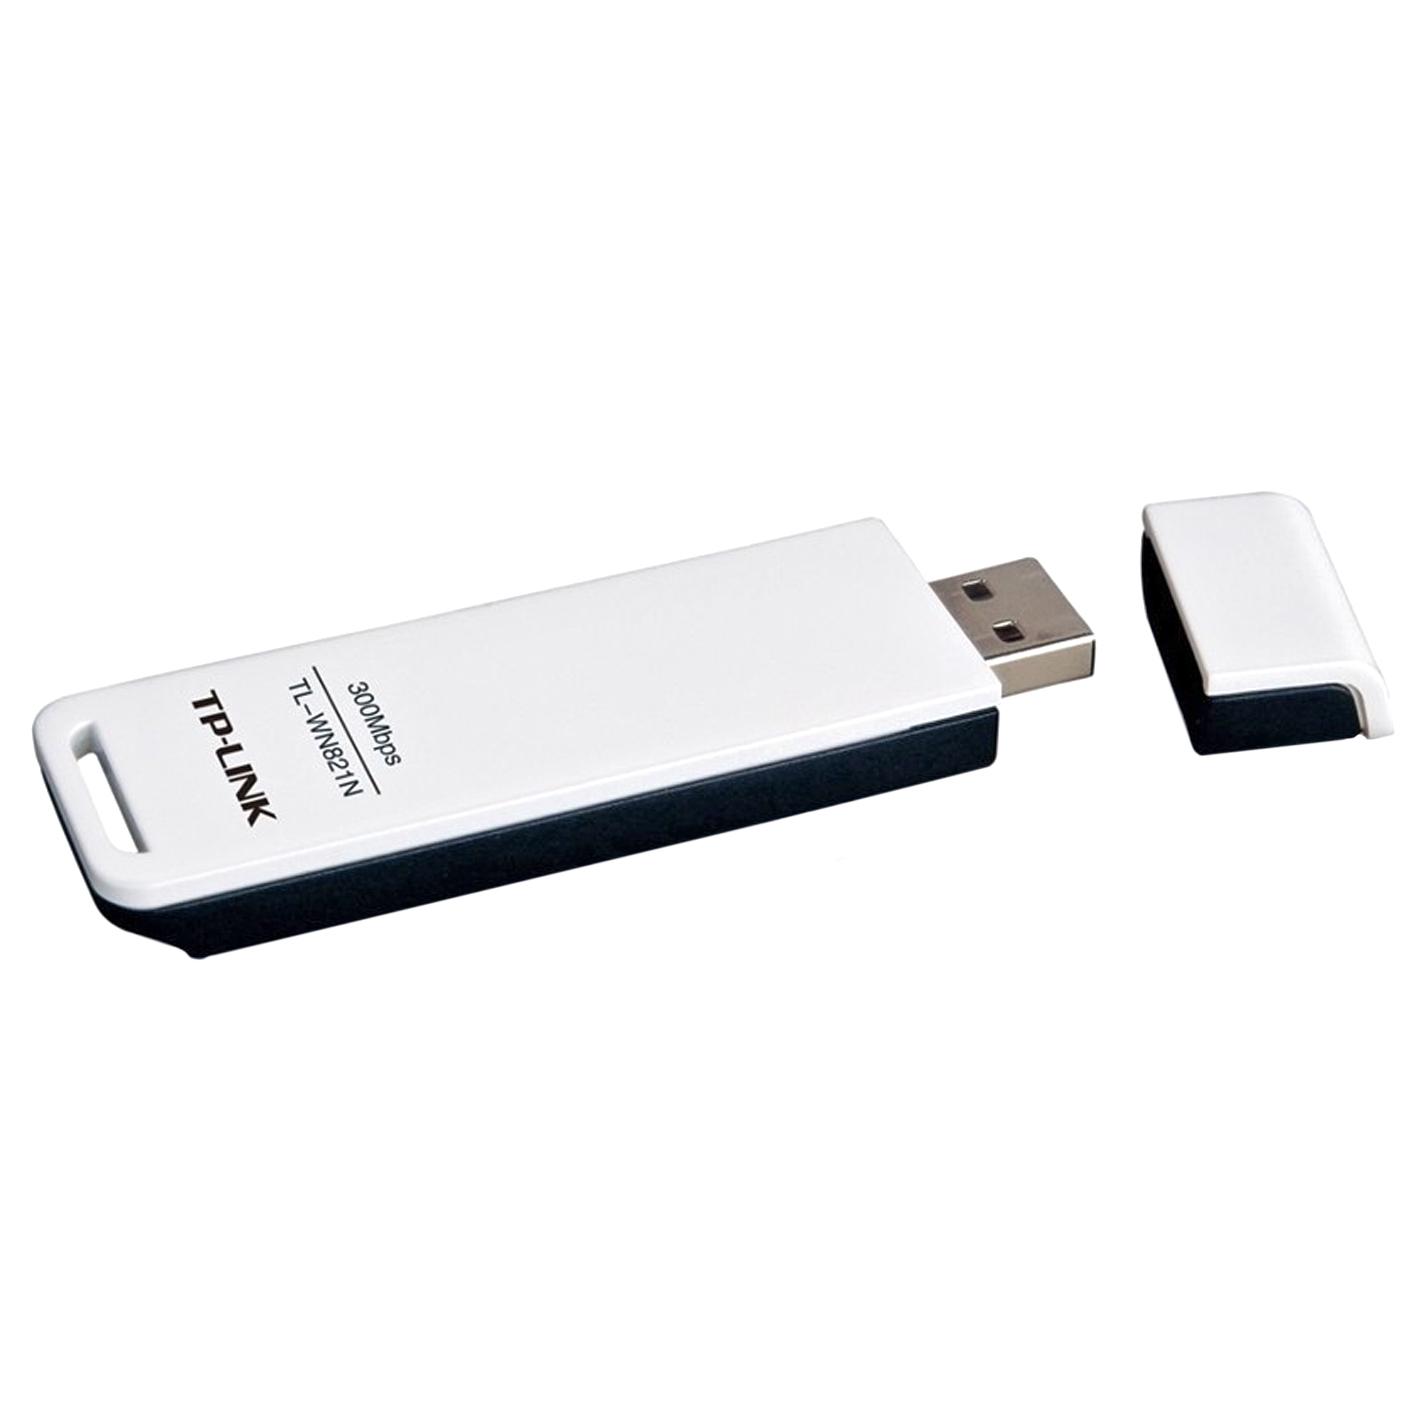 TP - LINK Wireless USB mrežna kartica TL-WN821N